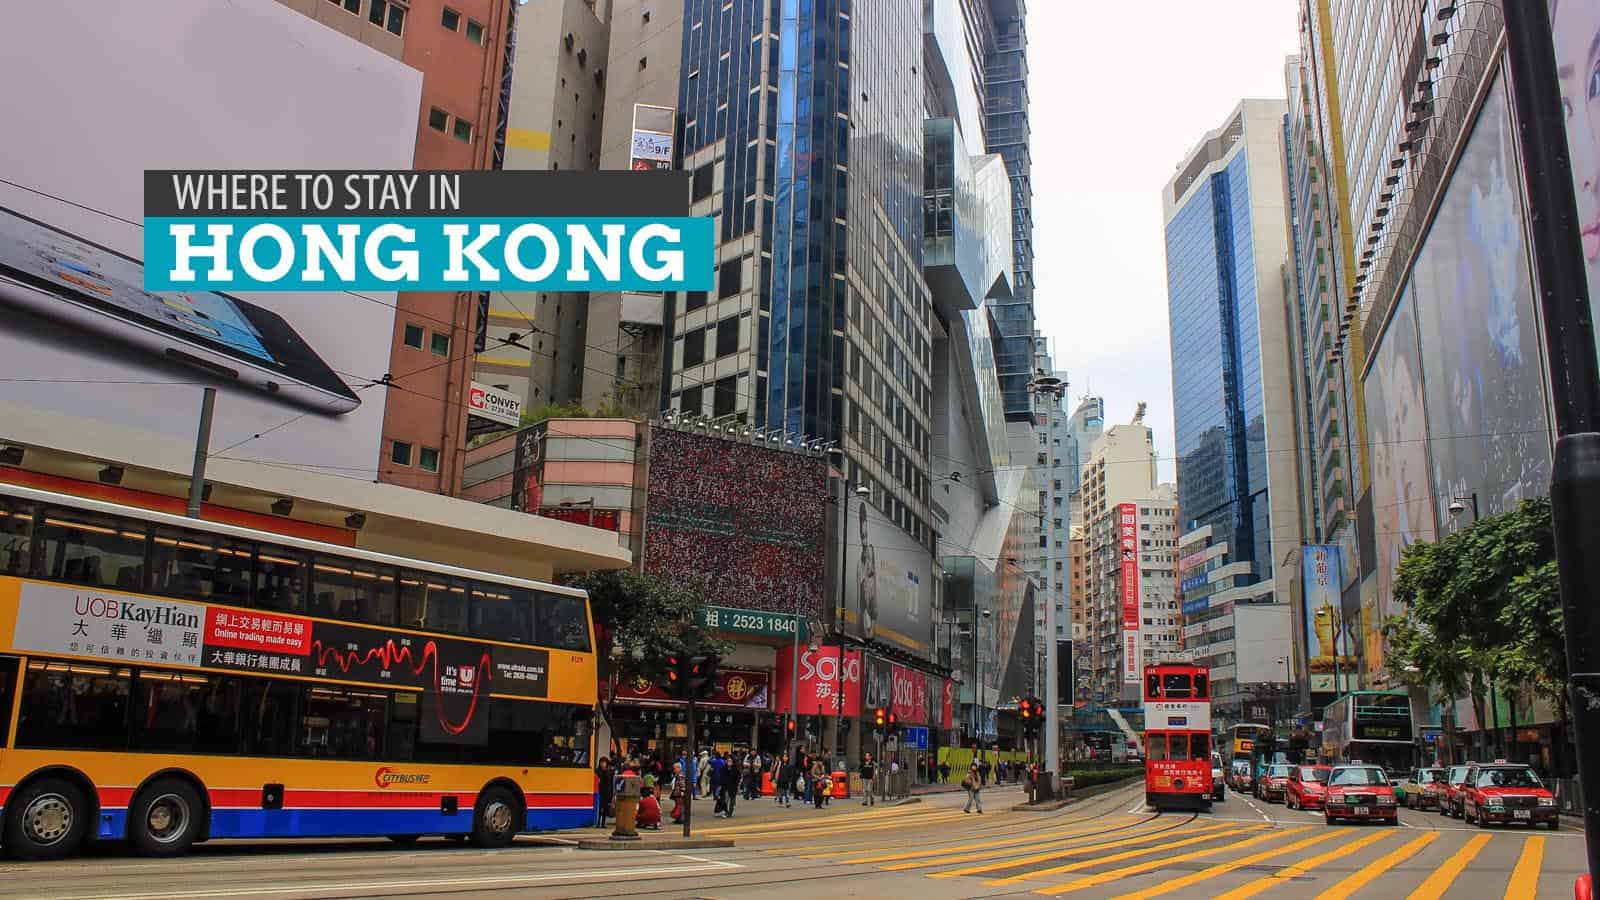 香港哪里可住:便宜的旅舍和宾馆